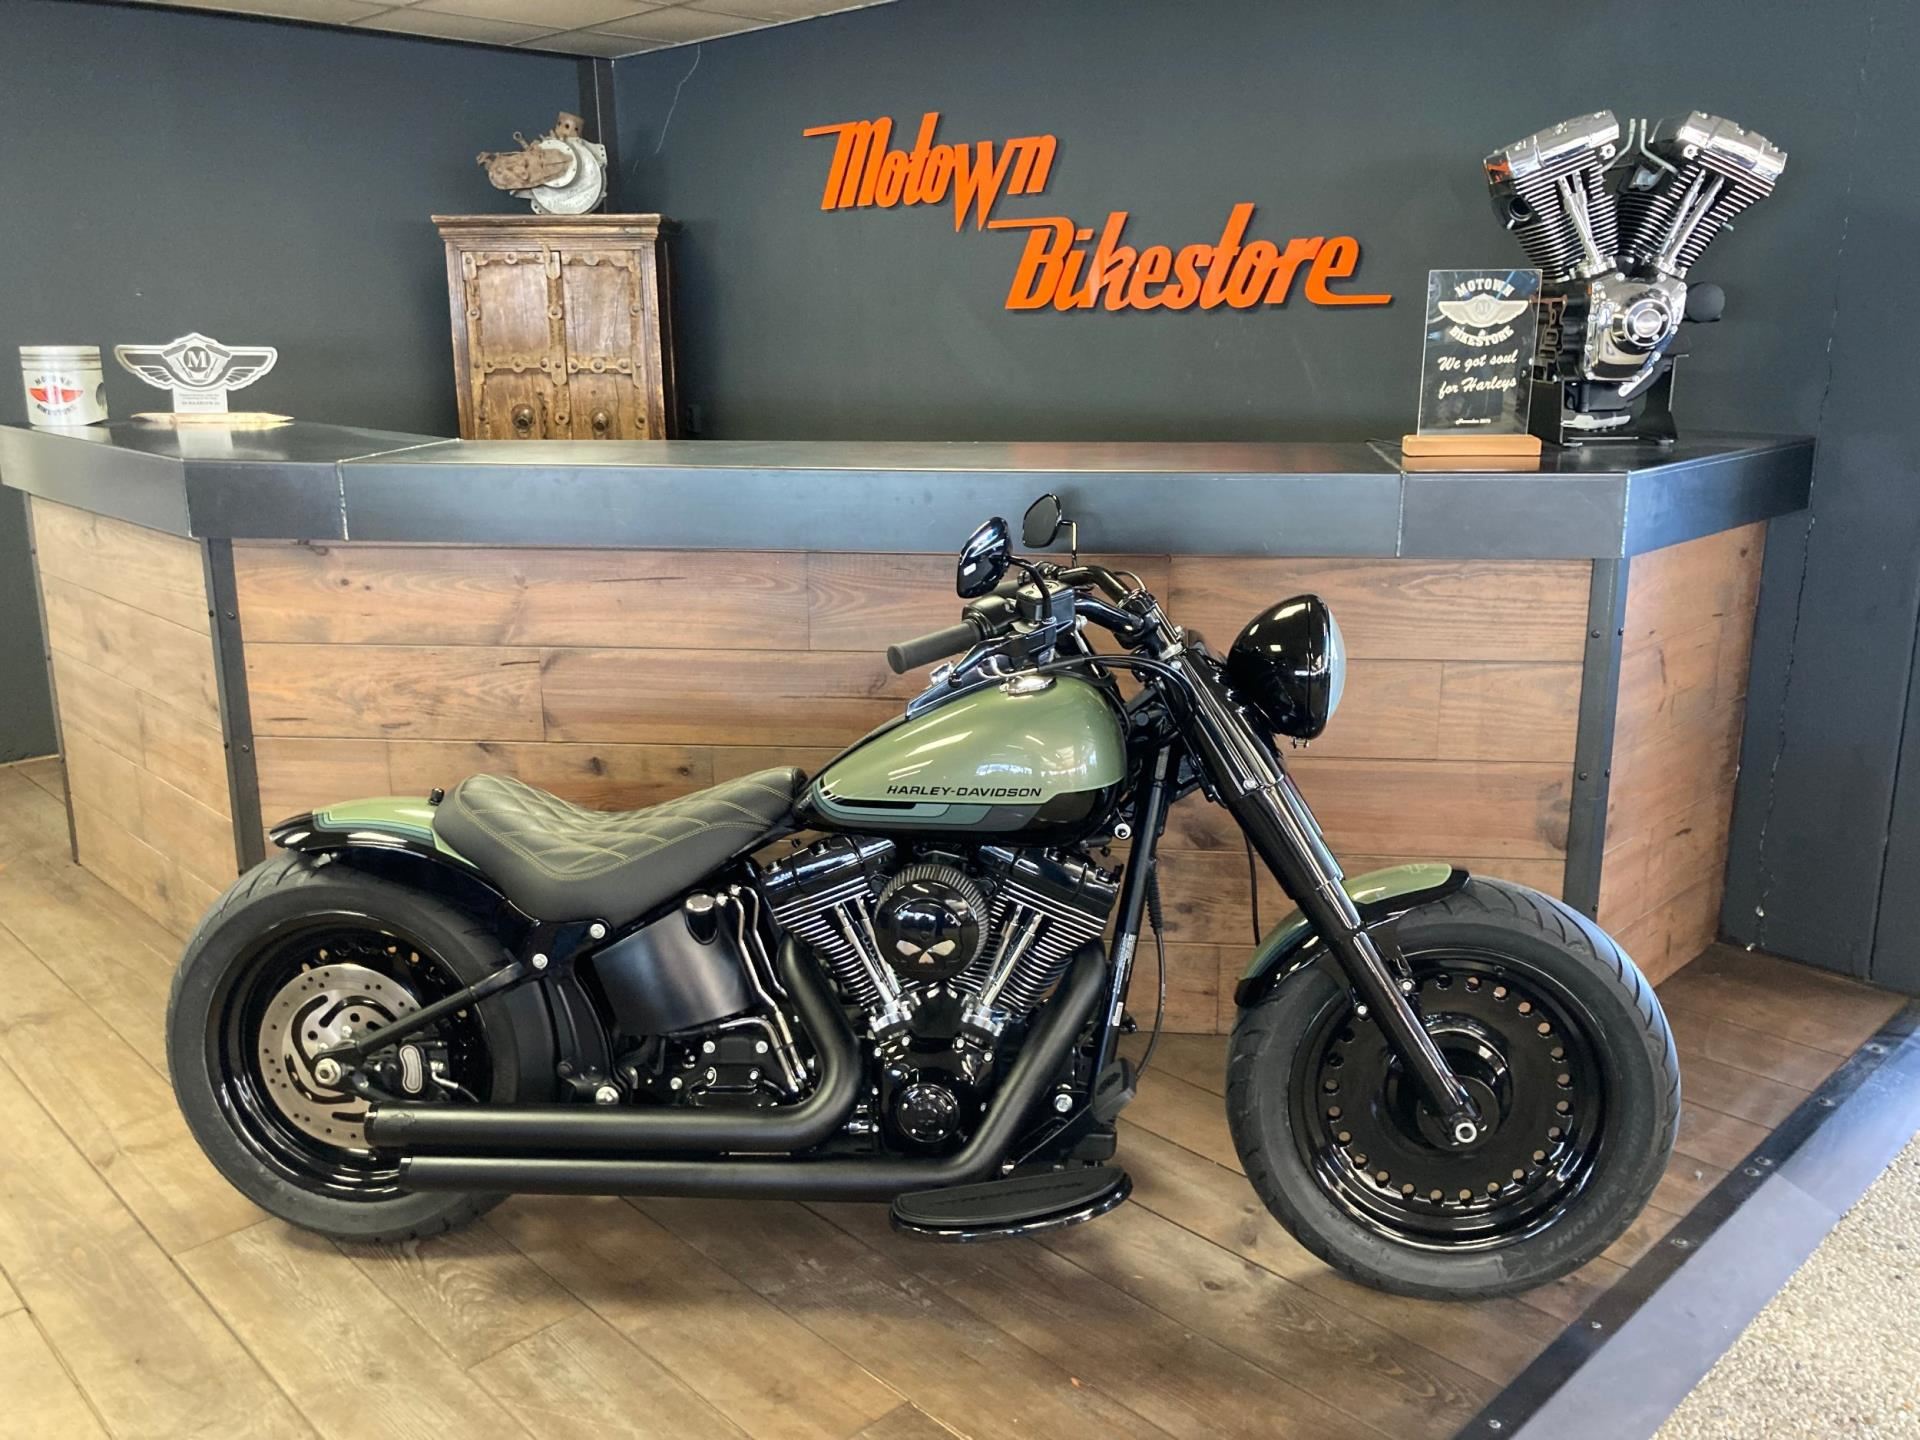 Harley Davidson FLSTFB Fatboy Special occasion - Motown Bikestore